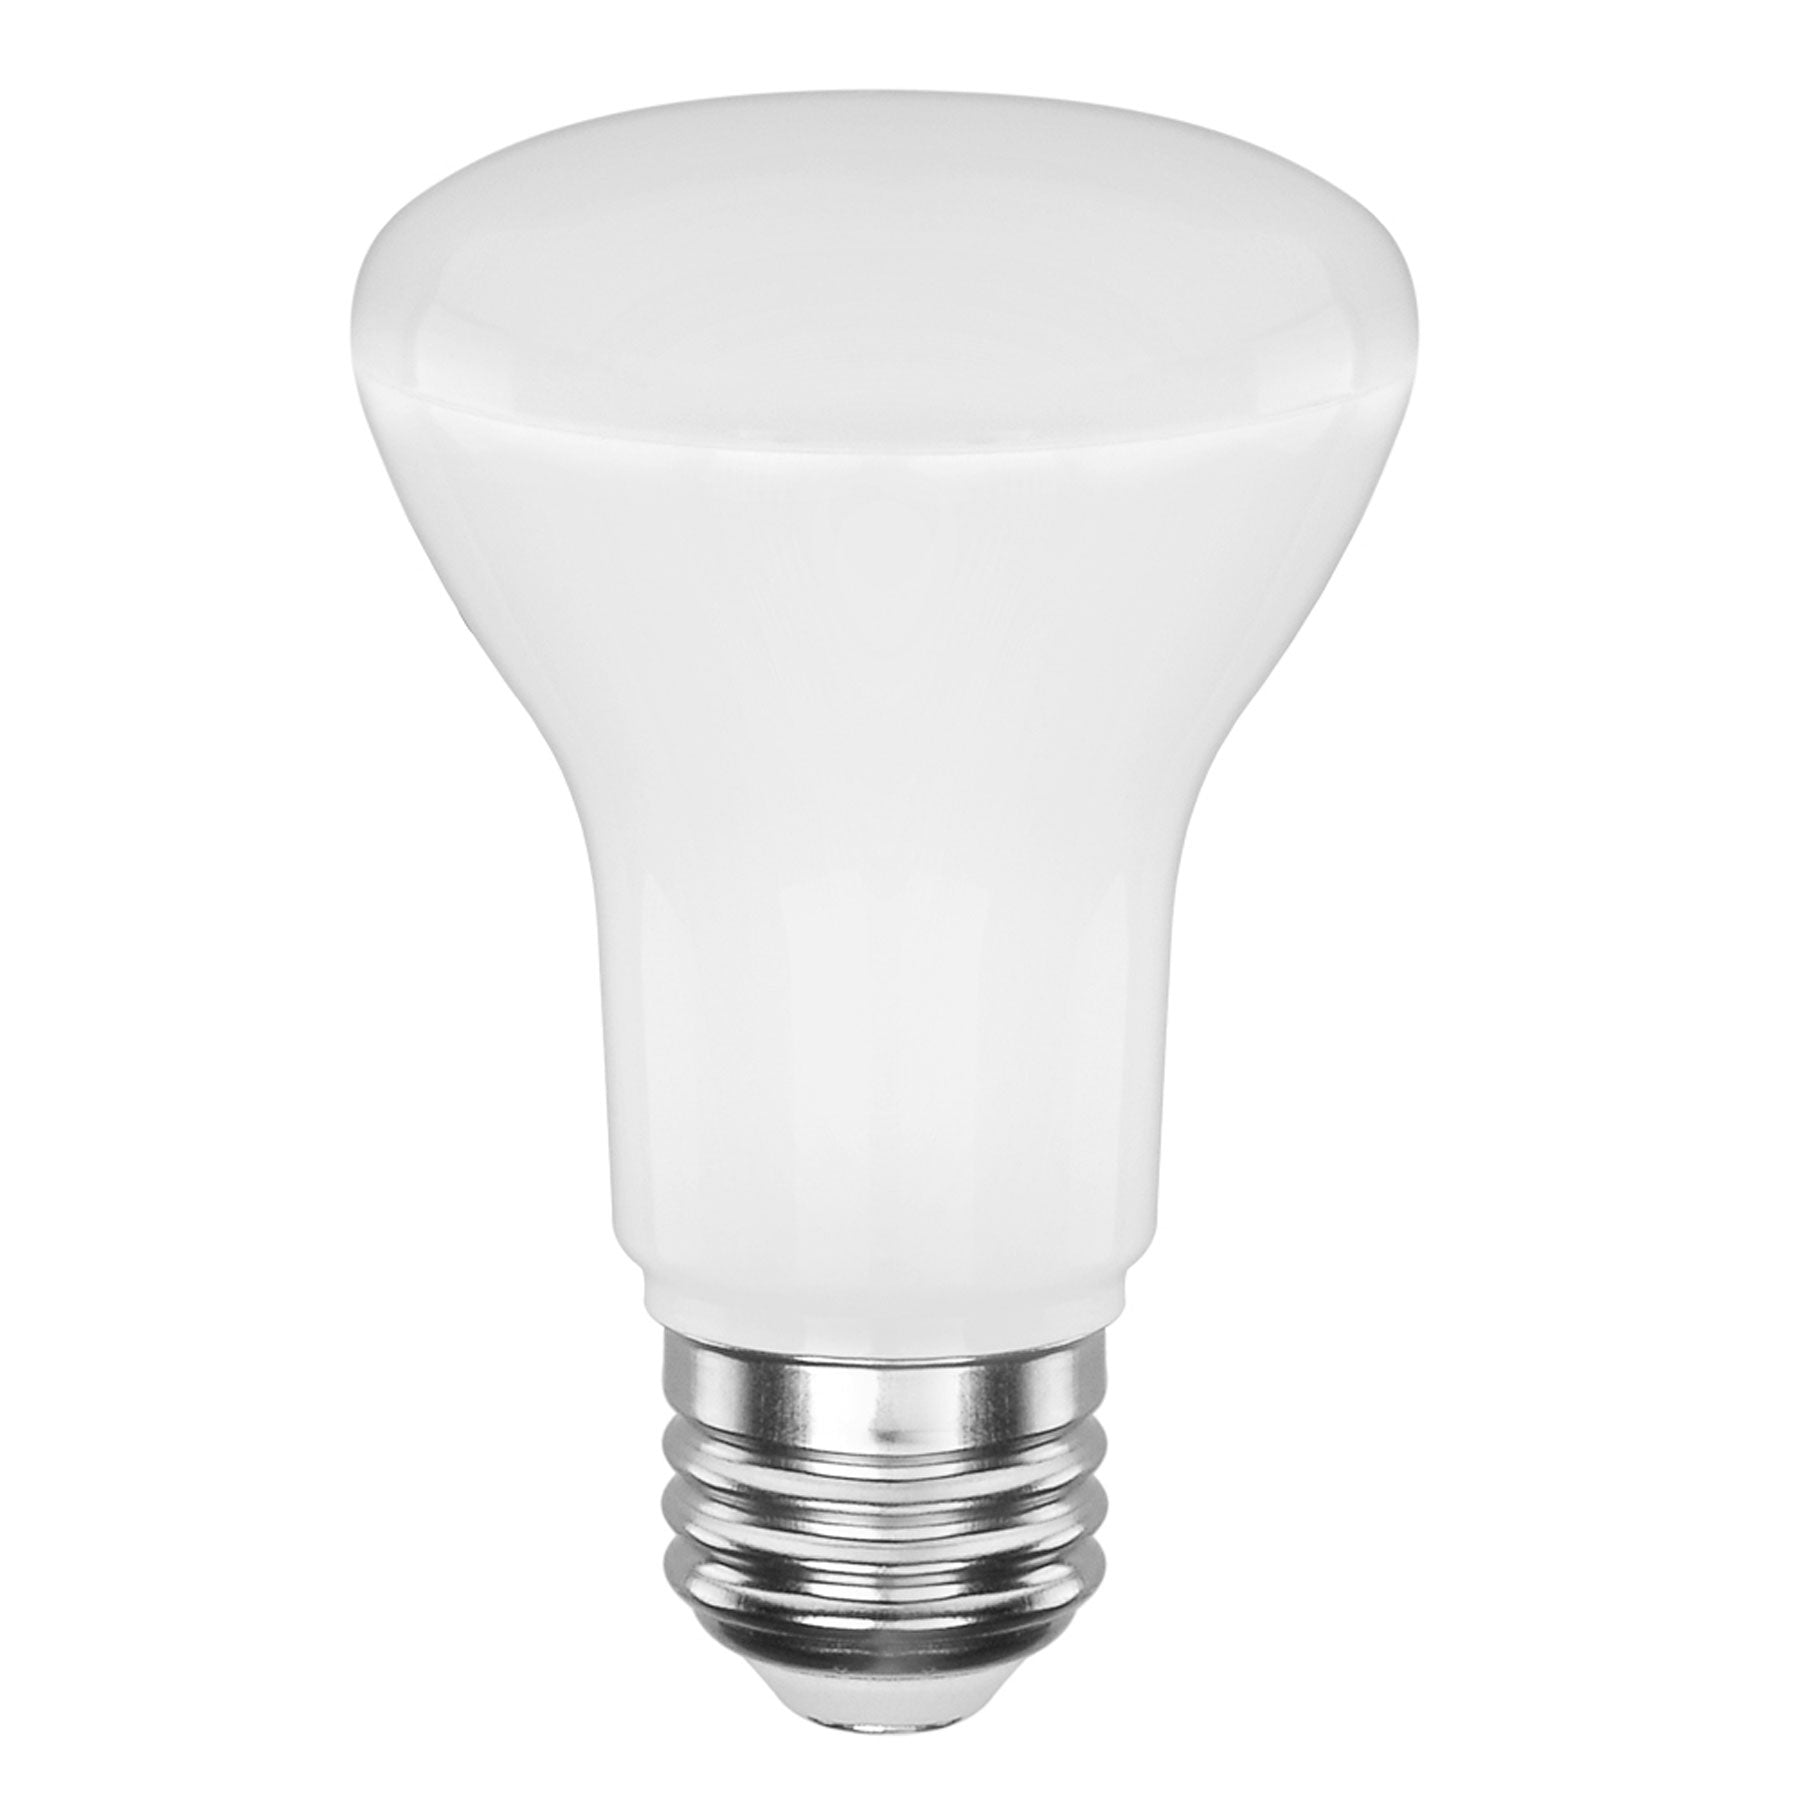 50-Watt Equivalent BR20 E26 LED Light Bulbs. Energy Star / CEC / JA8